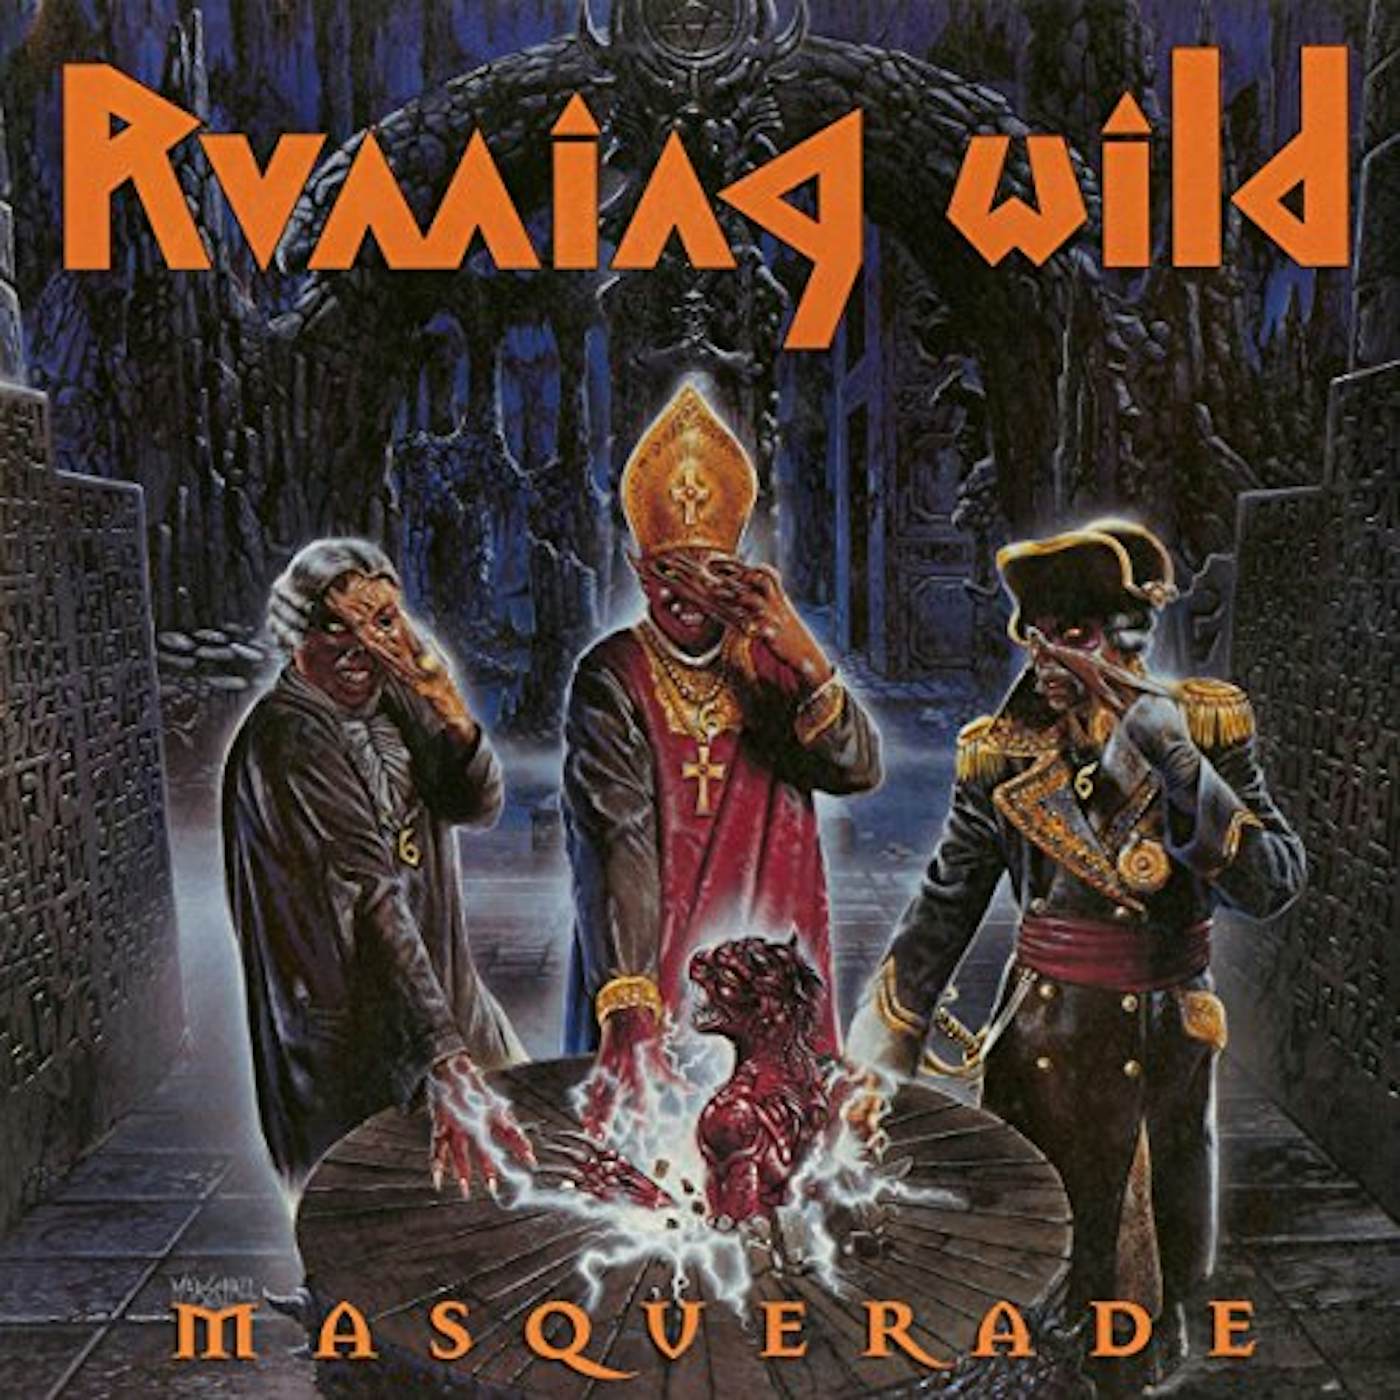 Running Wild Masquerade Vinyl Record